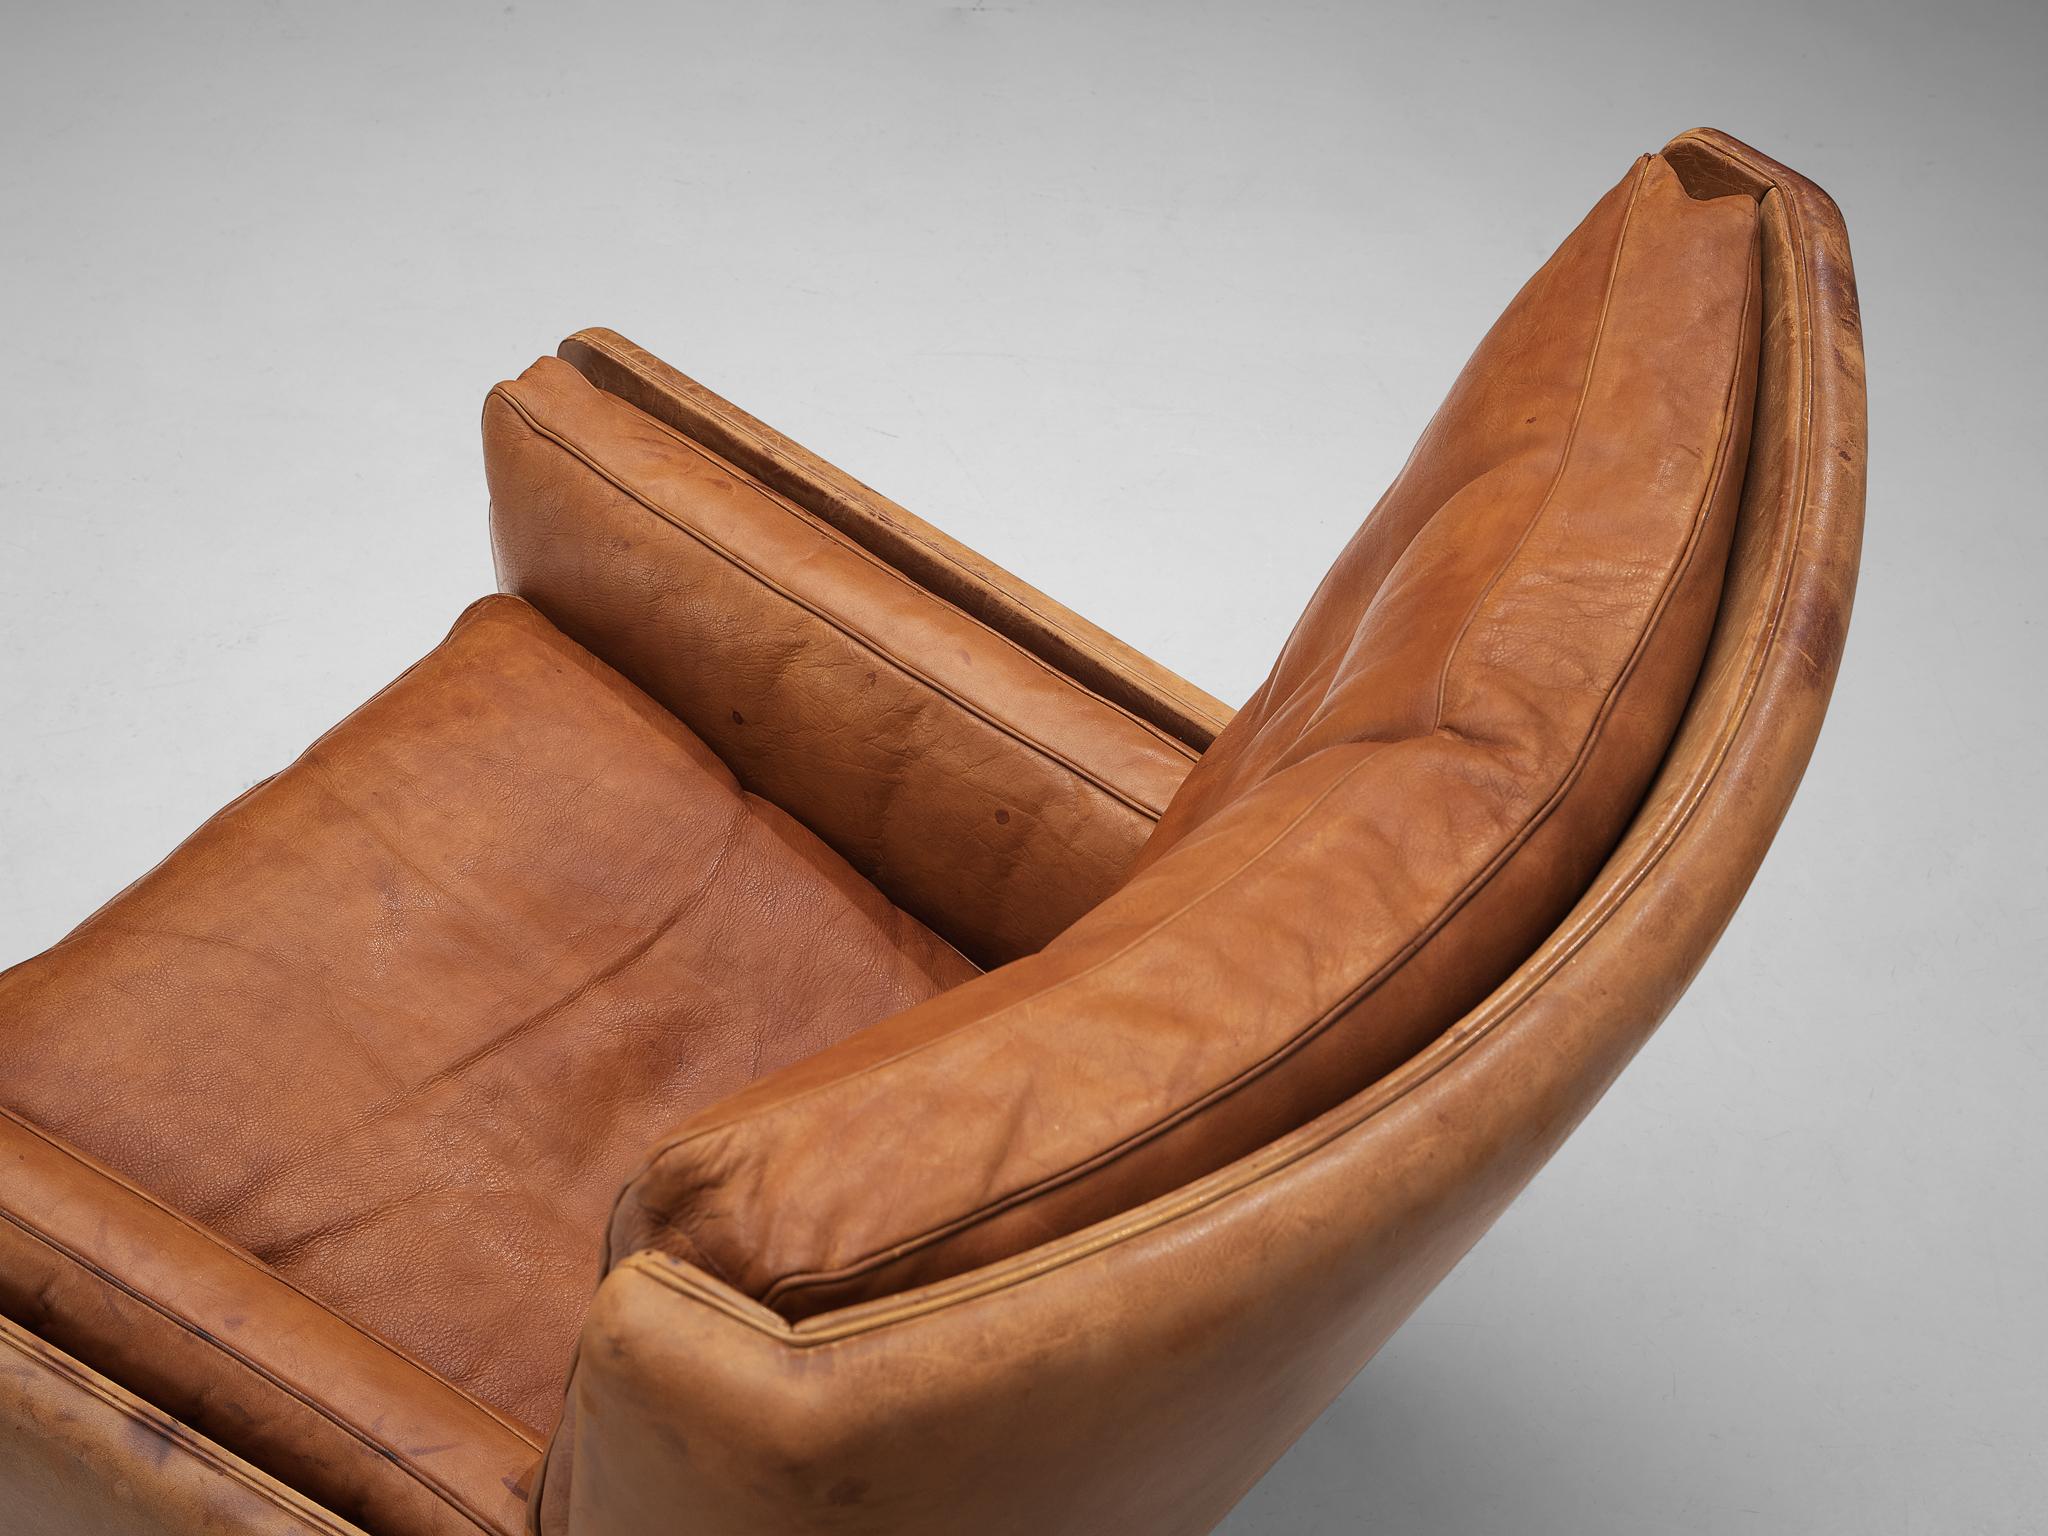 Illum Wikkelso for Holger Christiansen ‘V11’ Lounge Chair in Cognac Leather 3